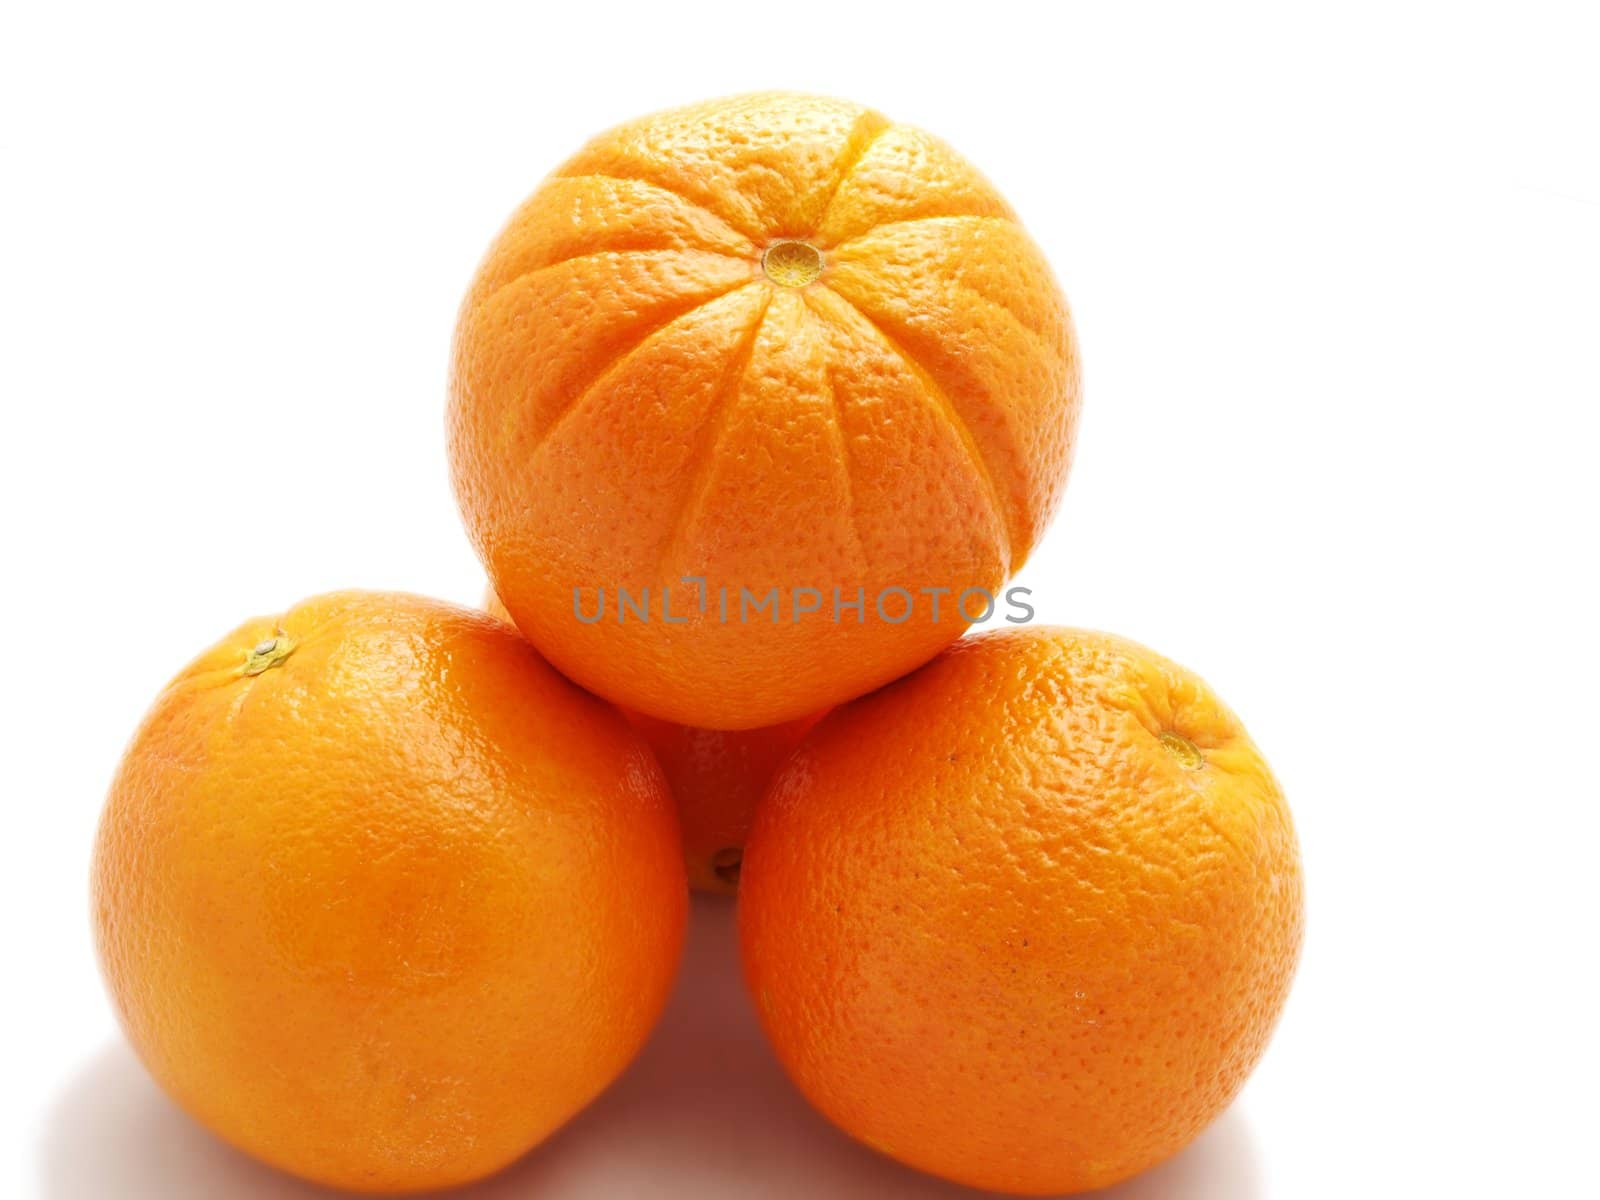 Orange fruits by Arvebettum